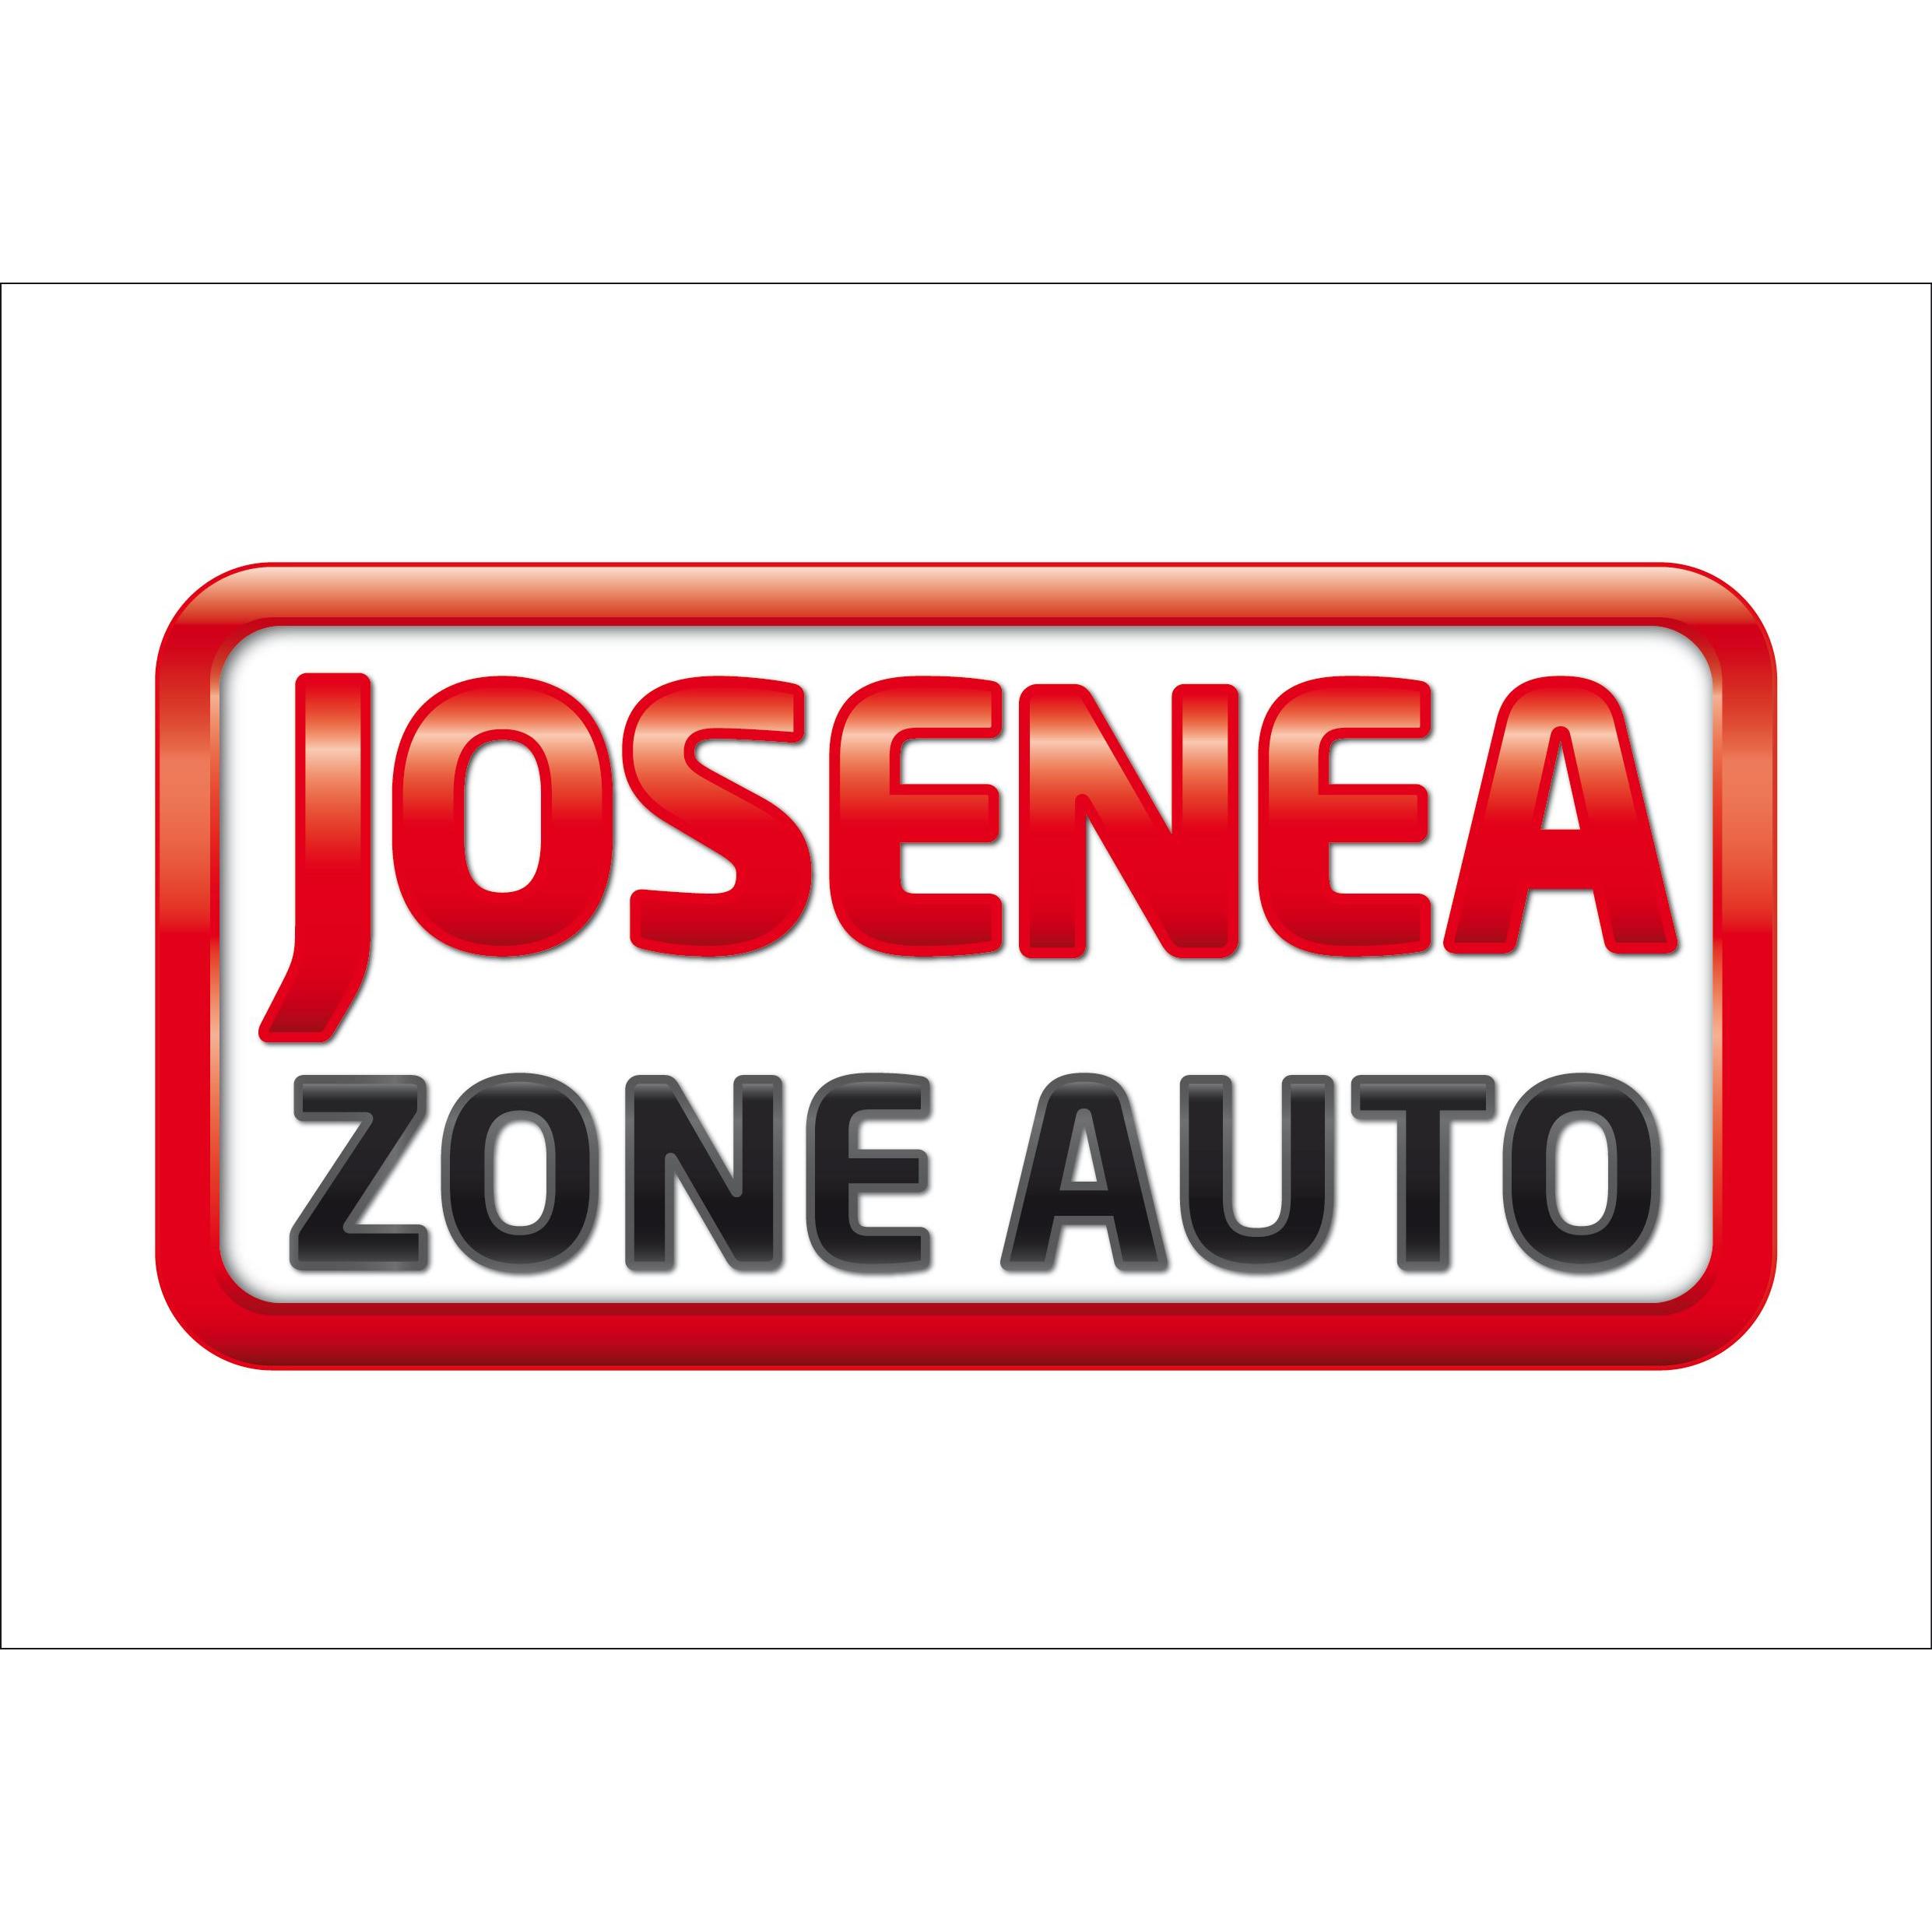 Estacion de servicio Zona Auto Josenea SL Logo